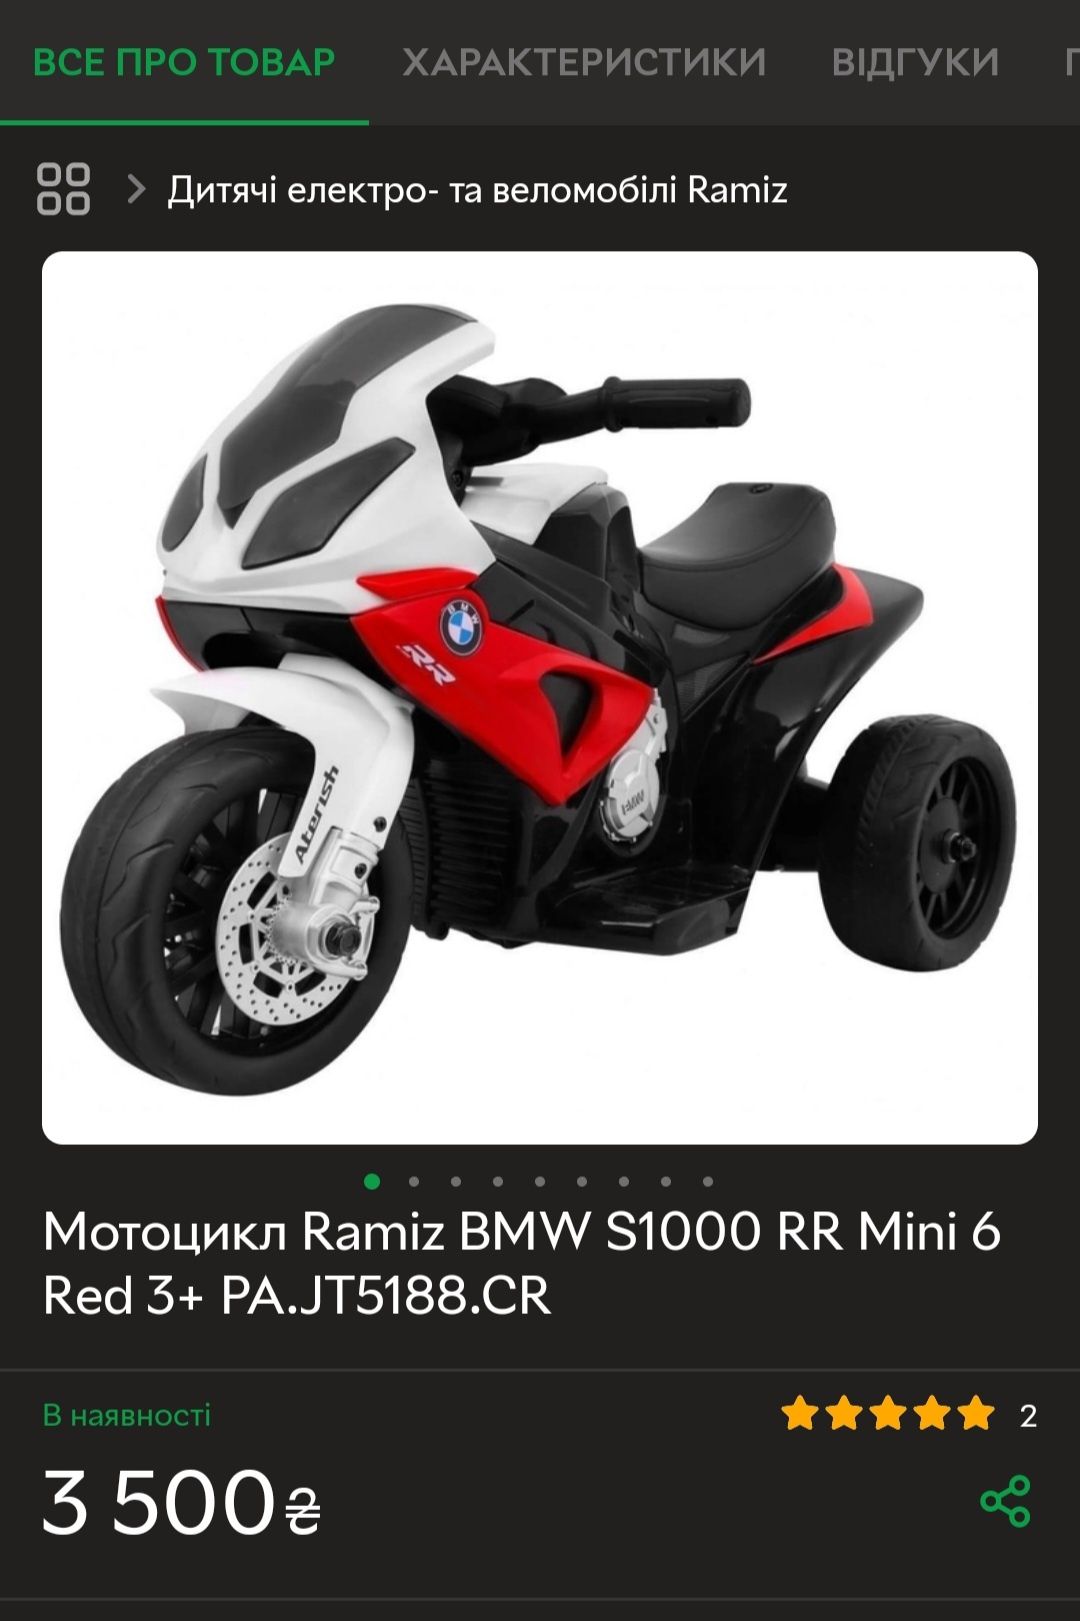 Мотоцикл Ramiz BMW S1000 RR mini6